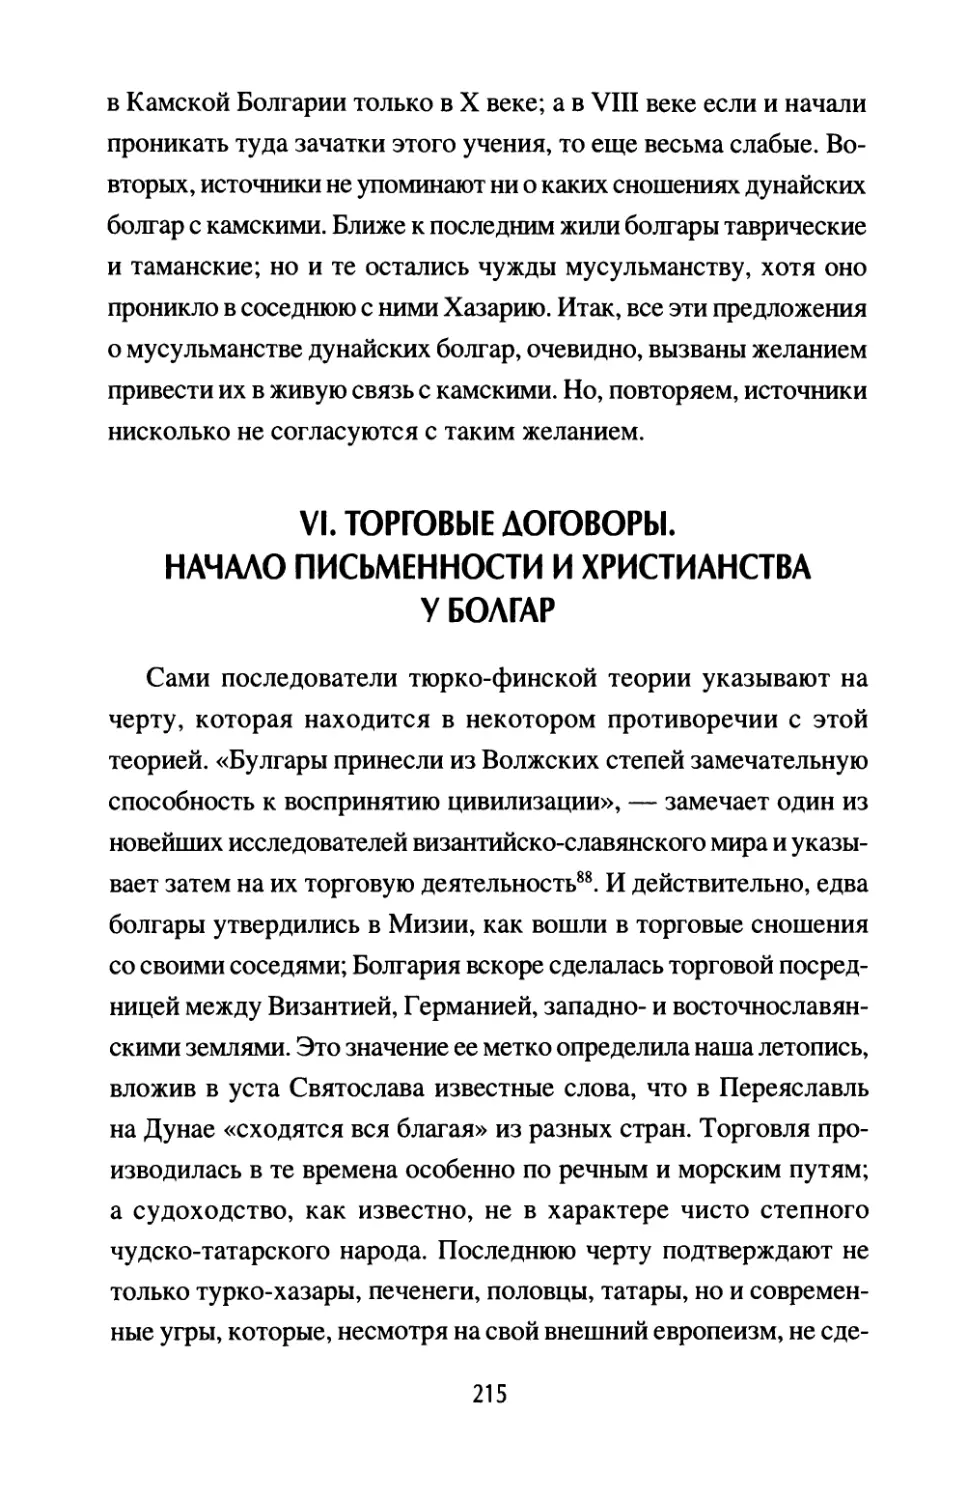 VI. Торговые договоры. Начало письменности и христианства у болгар